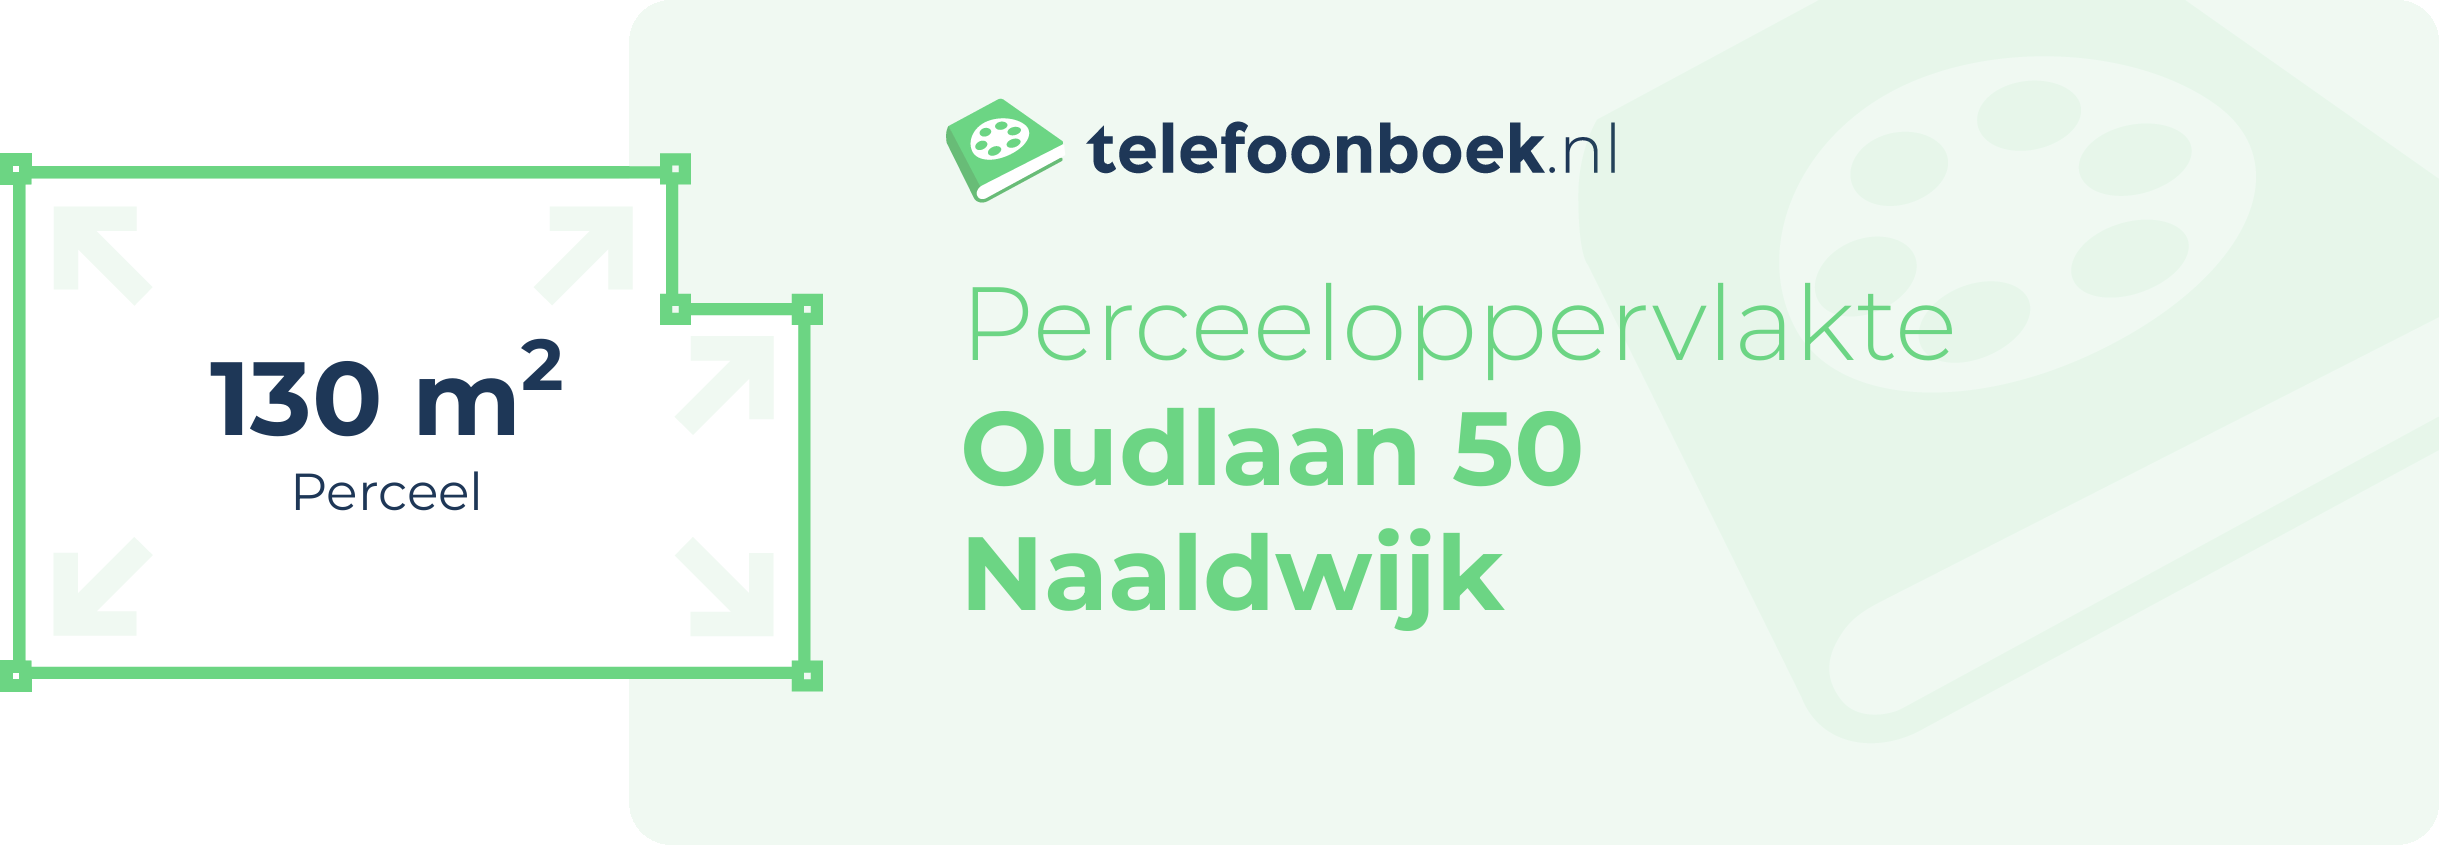 Perceeloppervlakte Oudlaan 50 Naaldwijk